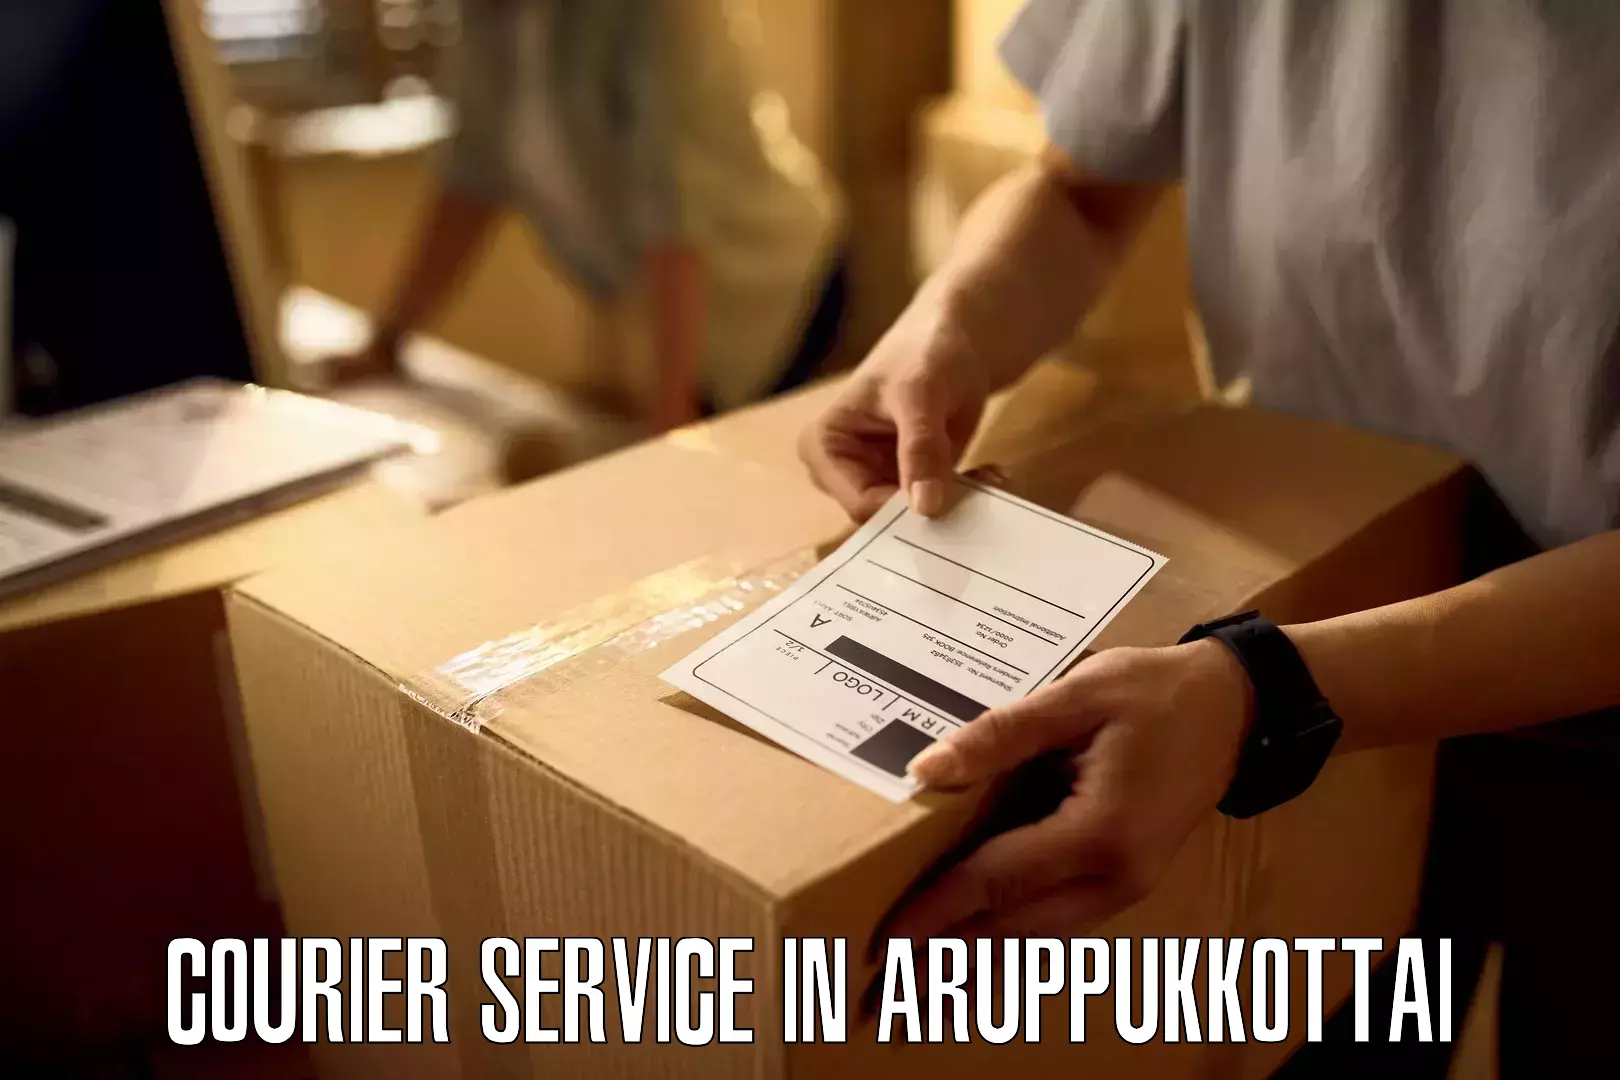 Next-day freight services in Aruppukkottai